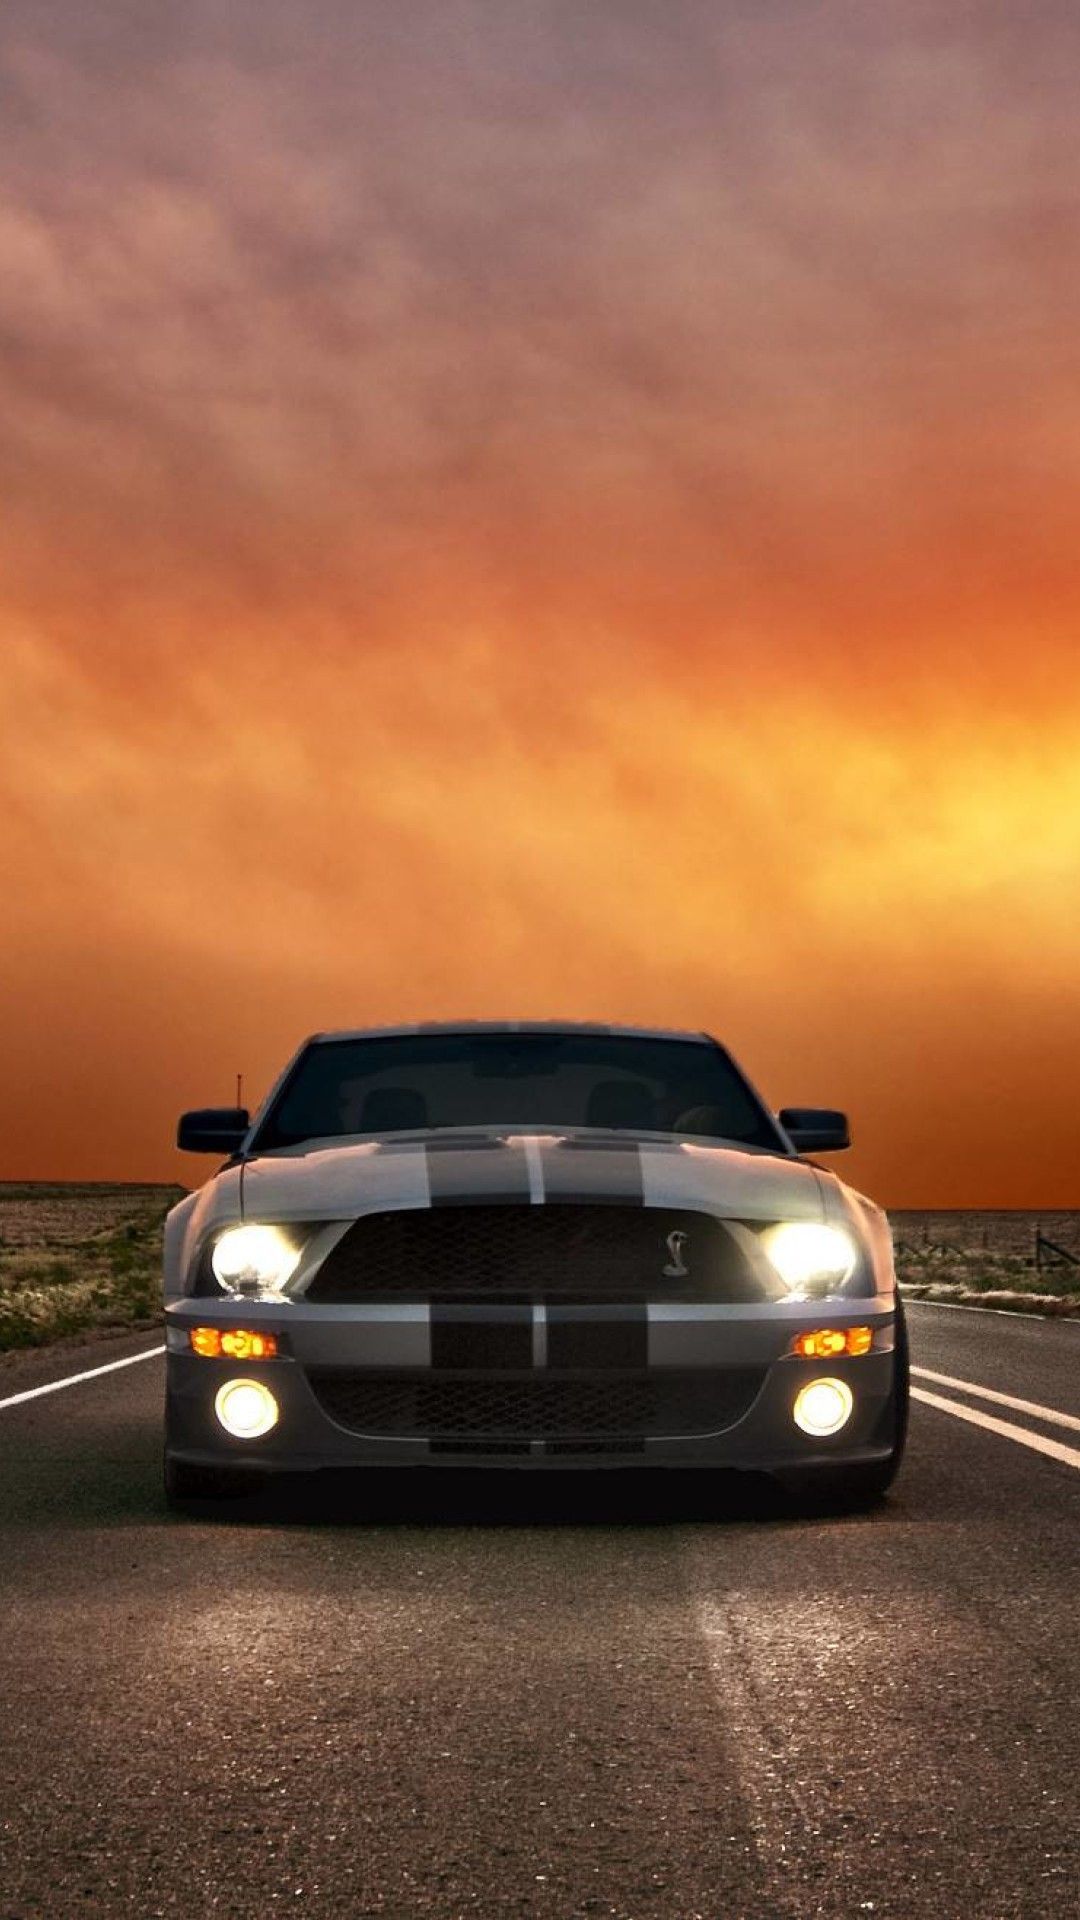 Full HD Mustang iPhone Wallpaperipcwallpaper.blogspot.com